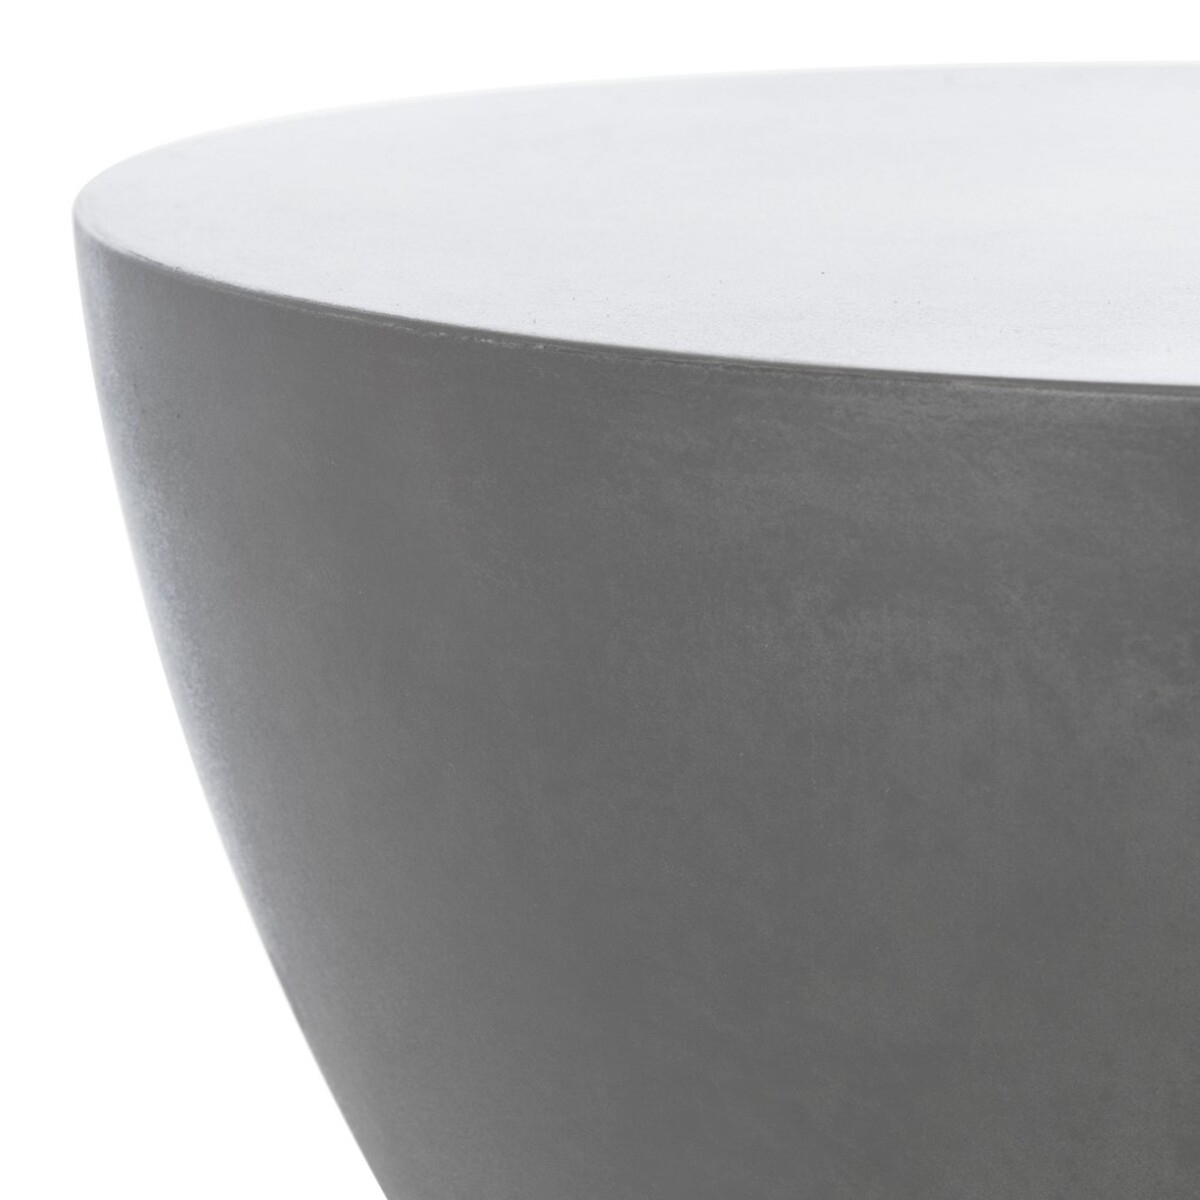 Athena Indoor/Outdoor Modern Concrete Round 17.7-Inch H Accent Table - Dark Grey - Safavieh - Image 3